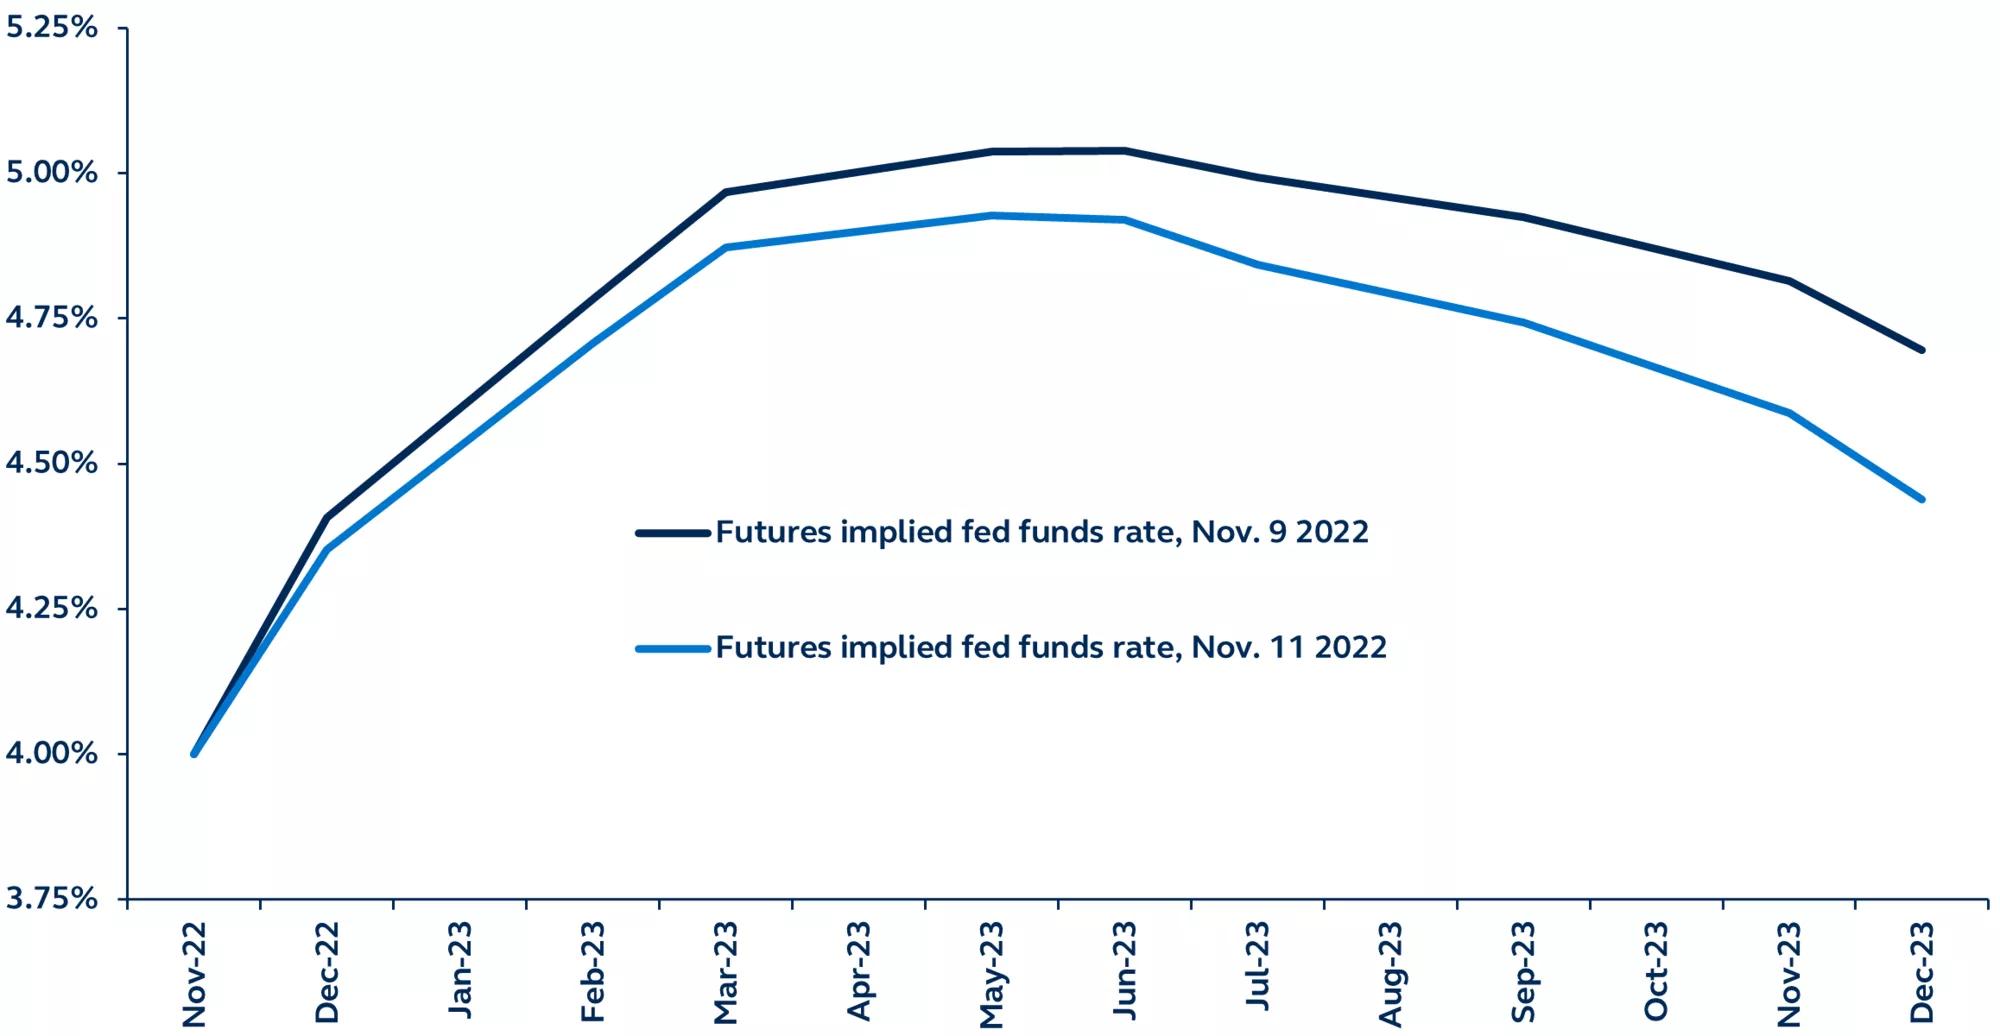 Line graph of implied fed funds target rate, Nov. 9 vs. Nov. 11.